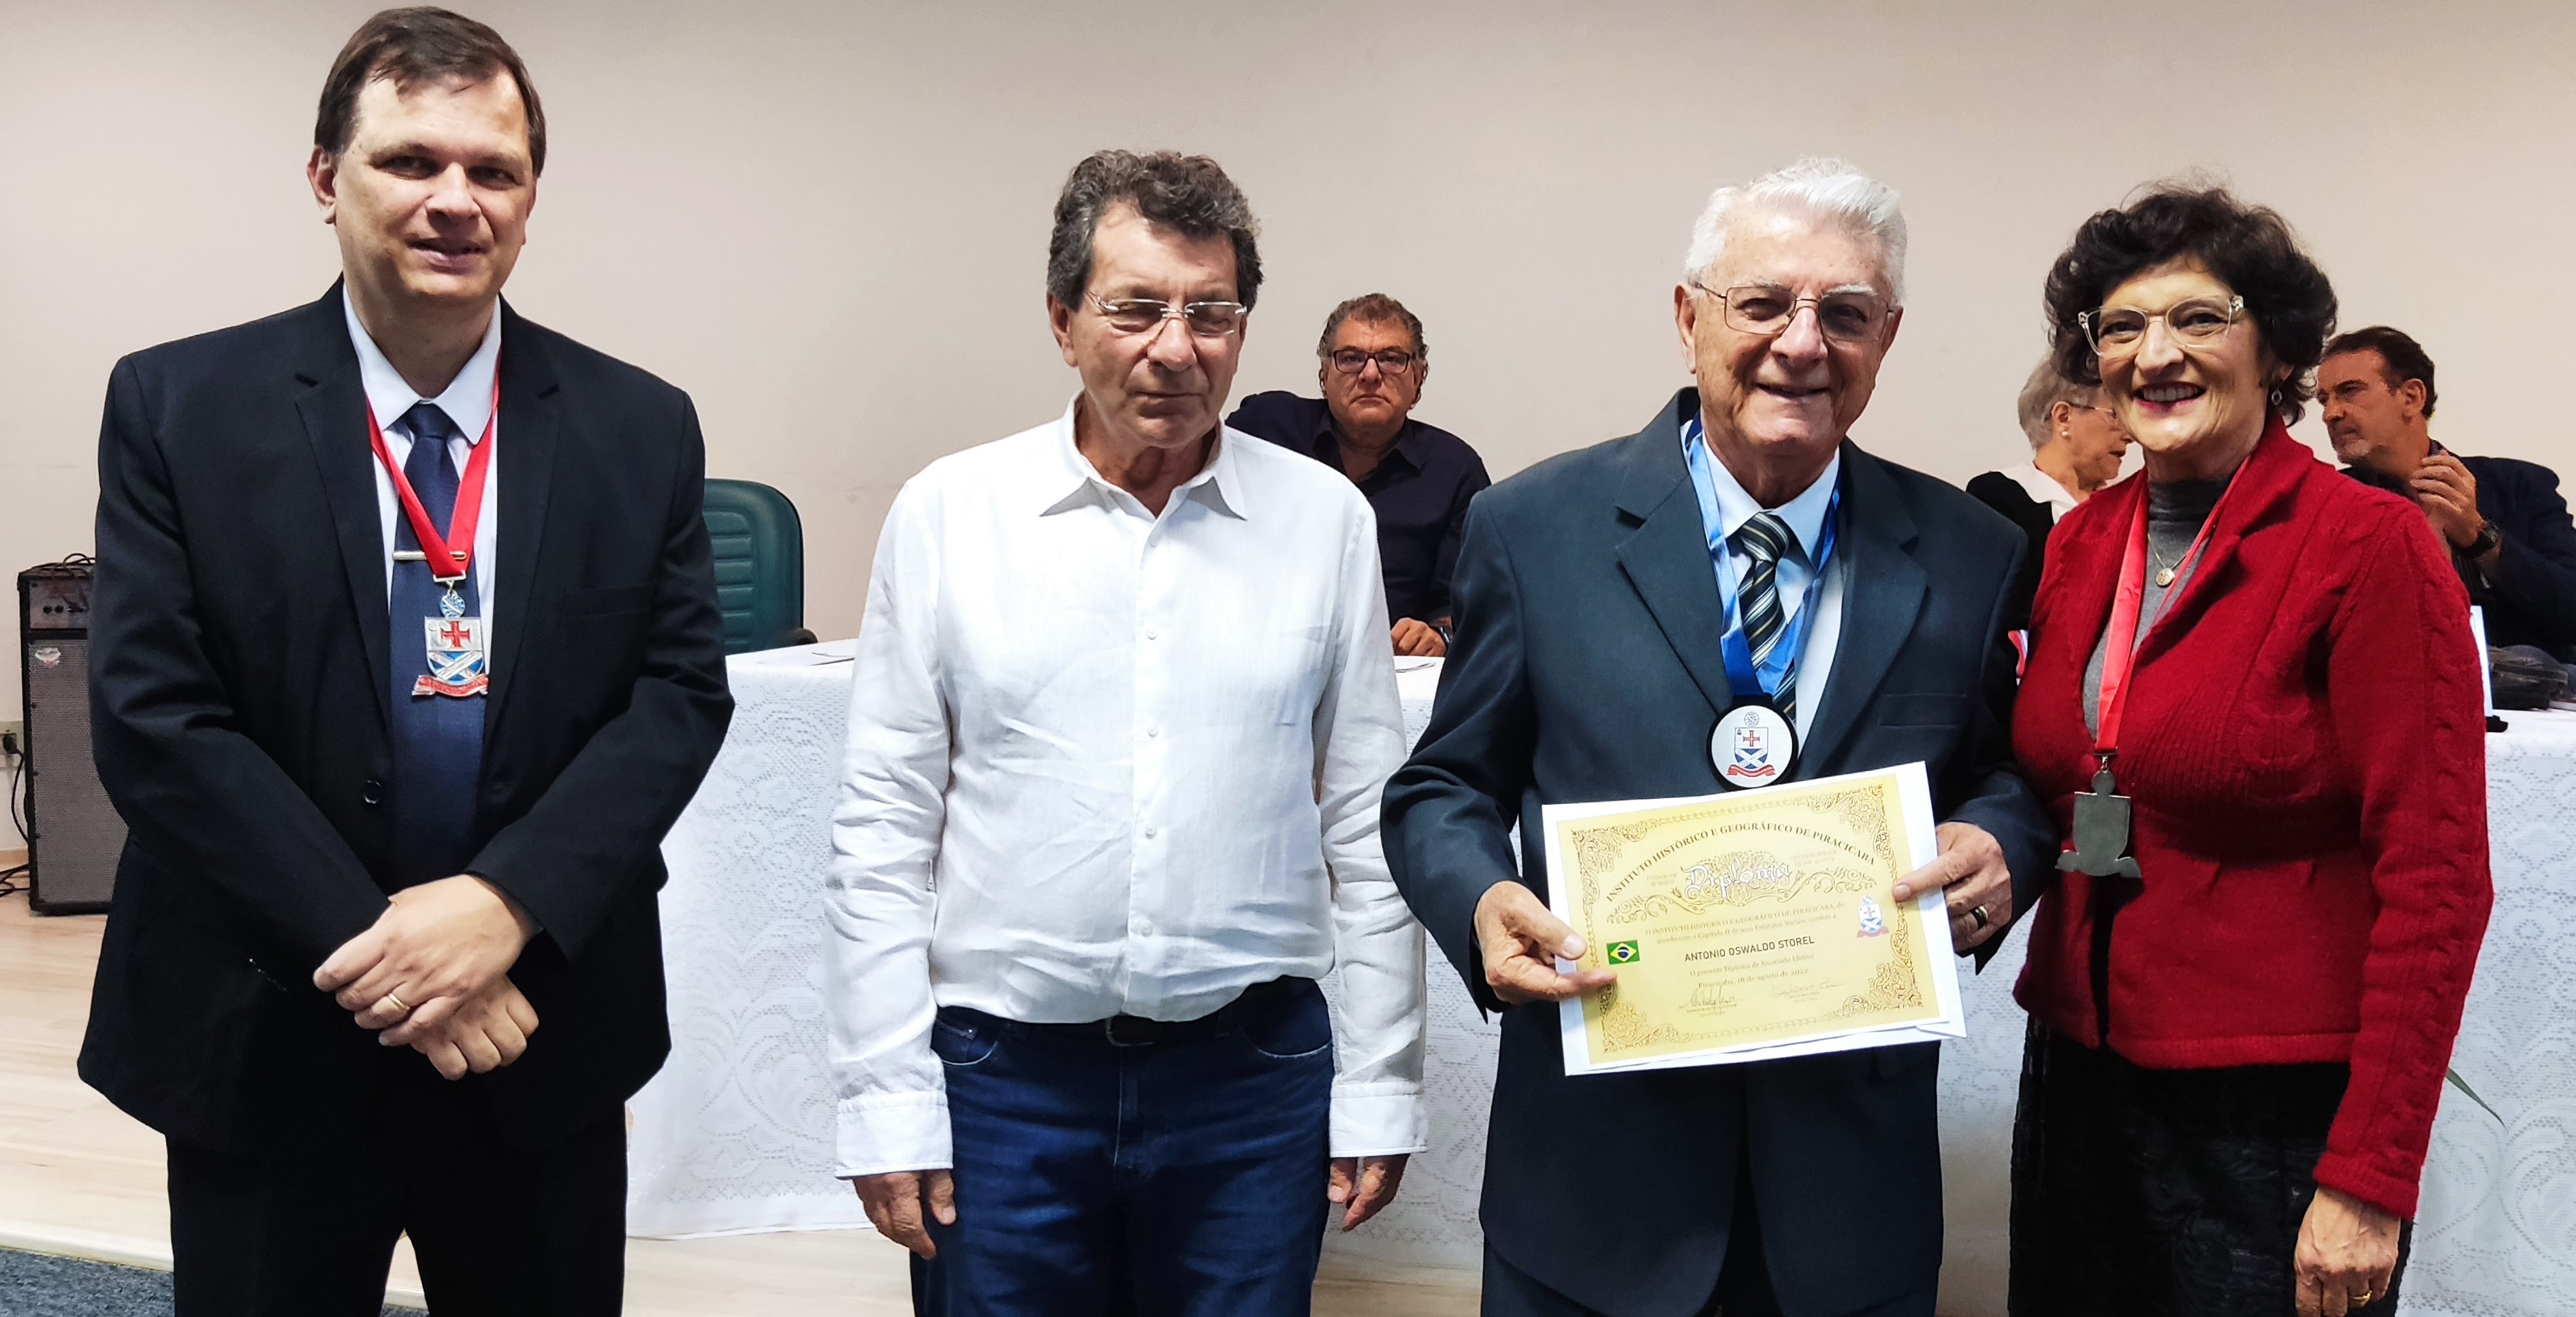 O ex-presidente da Regional dr. Antônio Oswaldo Storel foi recentemente empossado membro do Instituto Histórico e Geográfico de Piracicaba (IHGP).